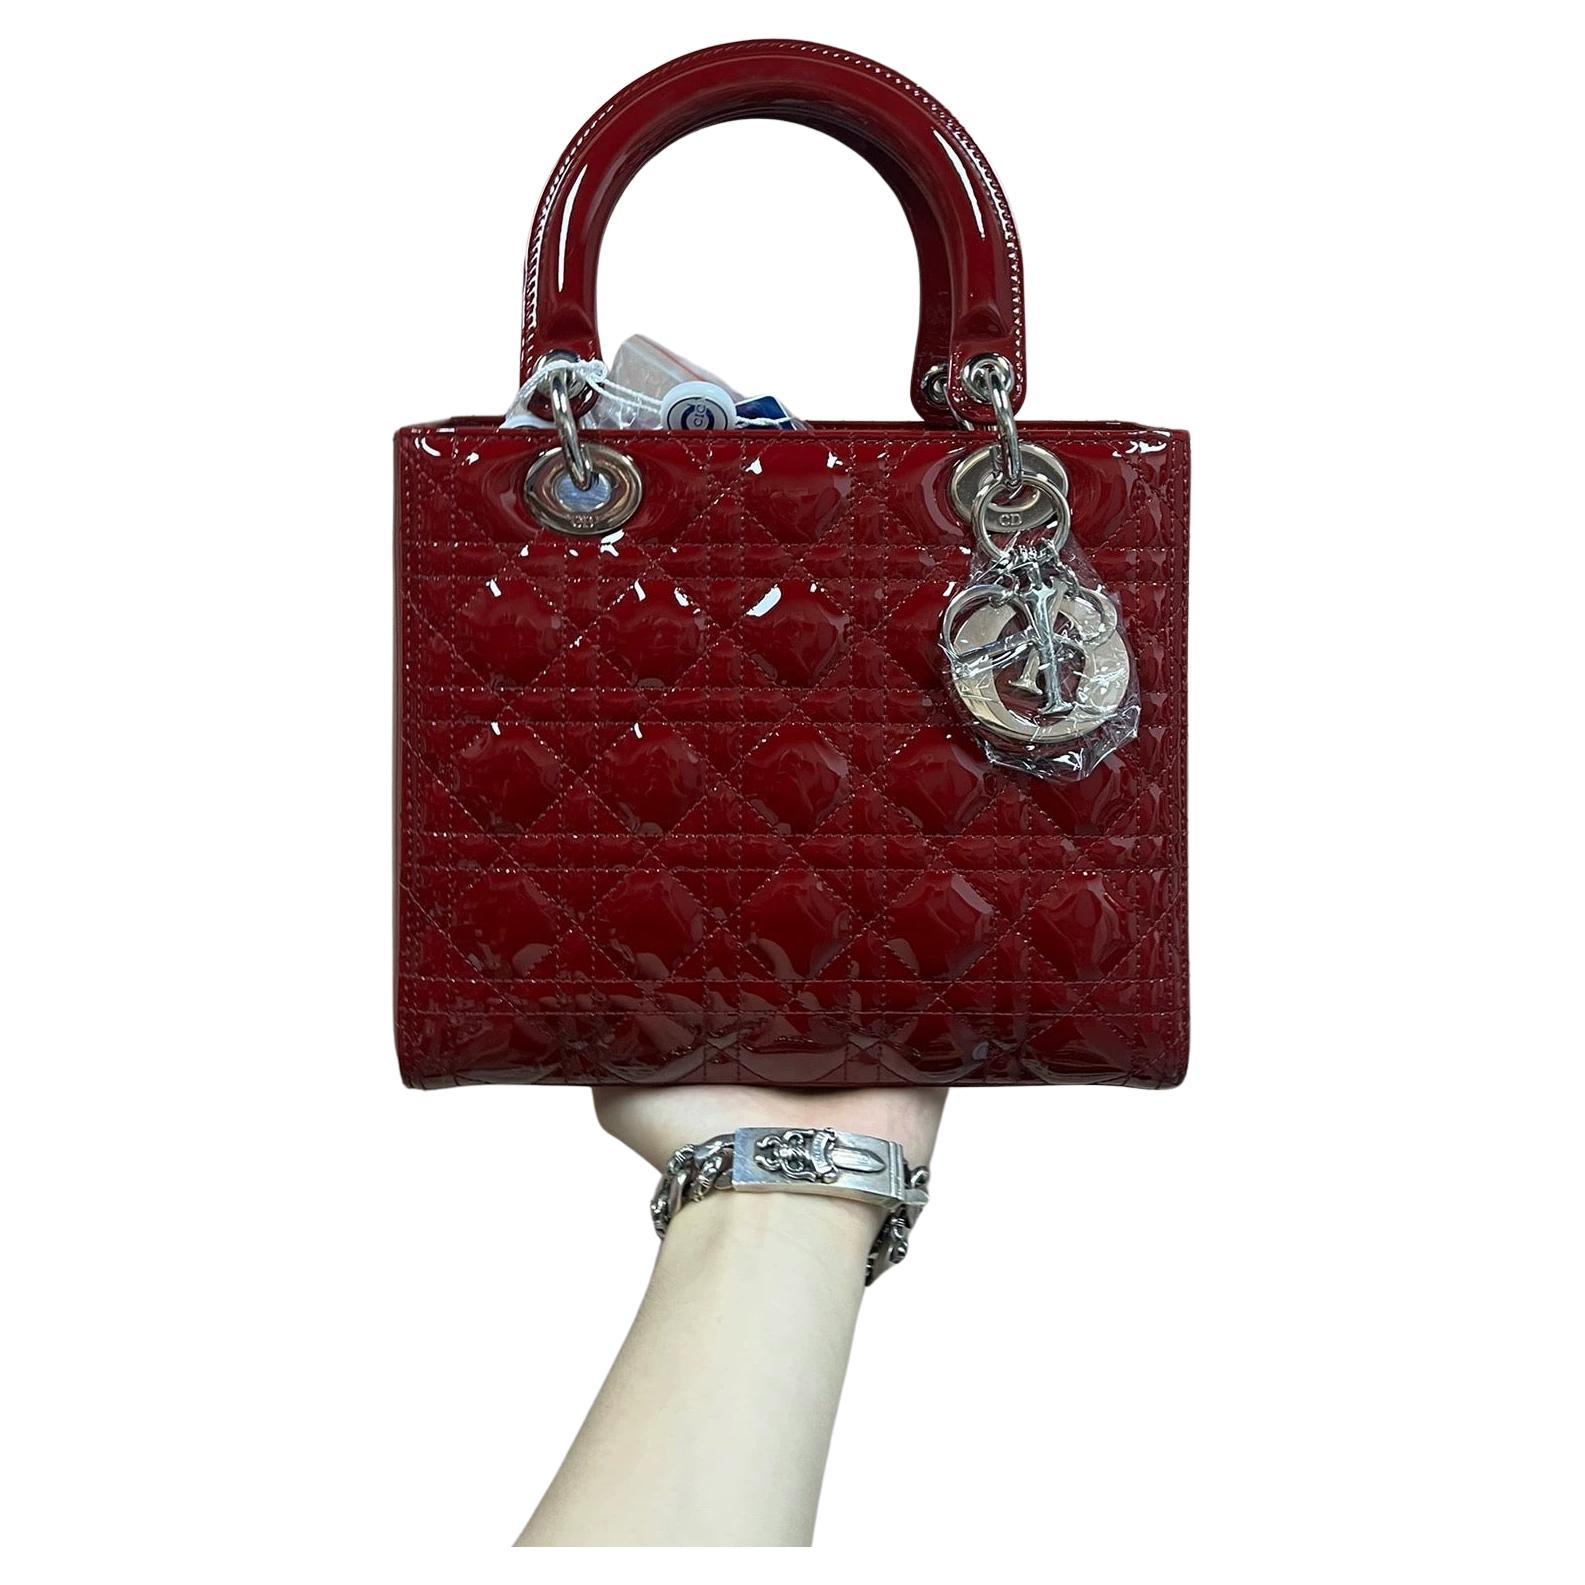 Le sac Lady Dior est l'incarnation de l'élégance et de la beauté. Accentuez votre look avec le style intemporel du Lady Dior Medium, réalisé en cuir verni Burgndy. Ce sac classique présente un point de cannage, créant une belle silhouette et un